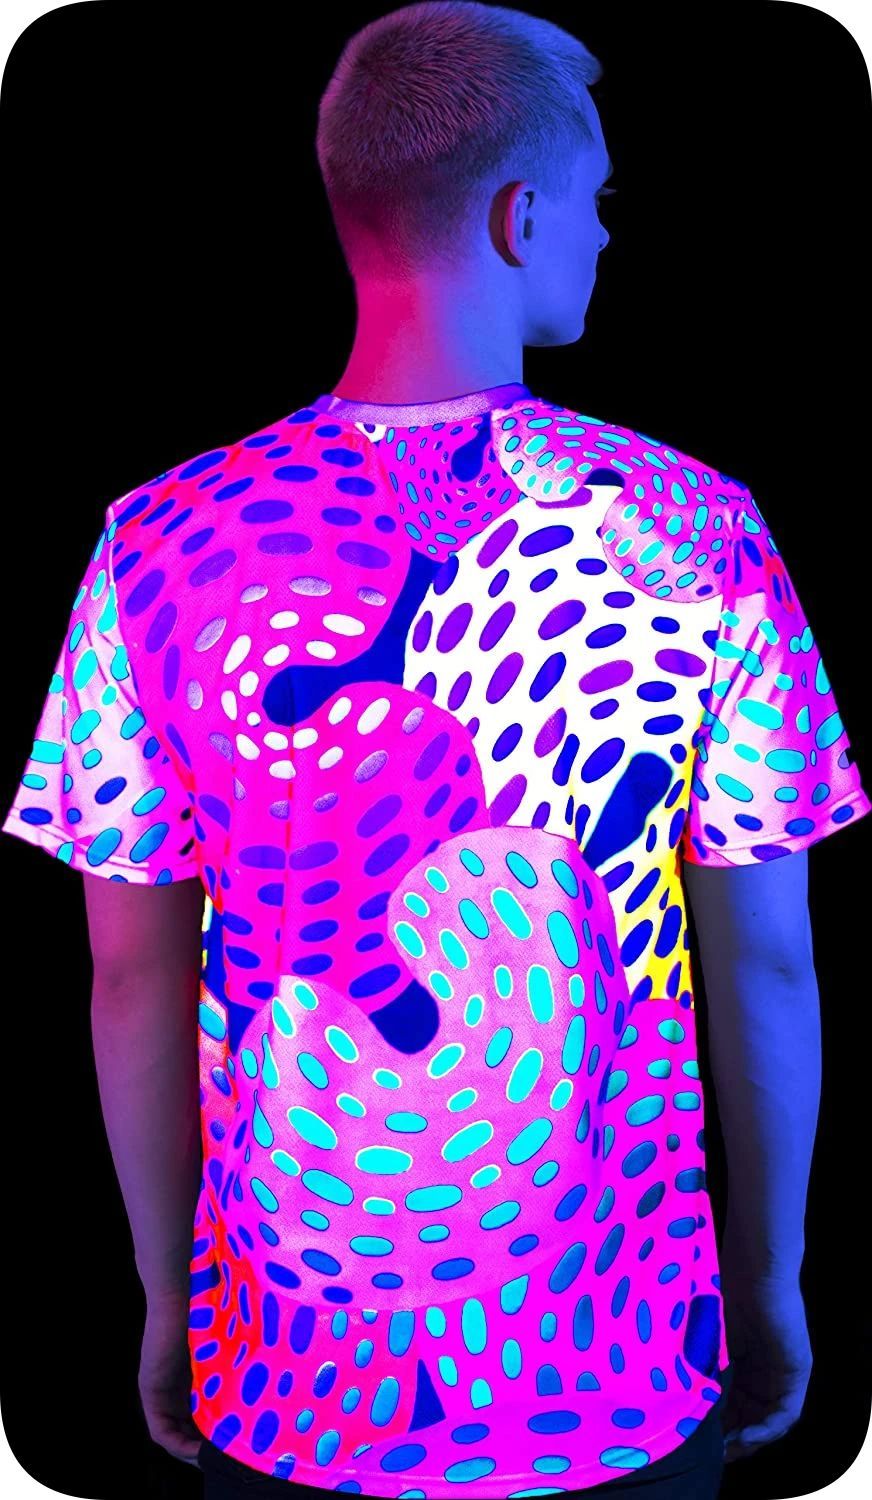 Black Light T-Shirt for Men Glow in UV Fluorescent Grand Donut ts30